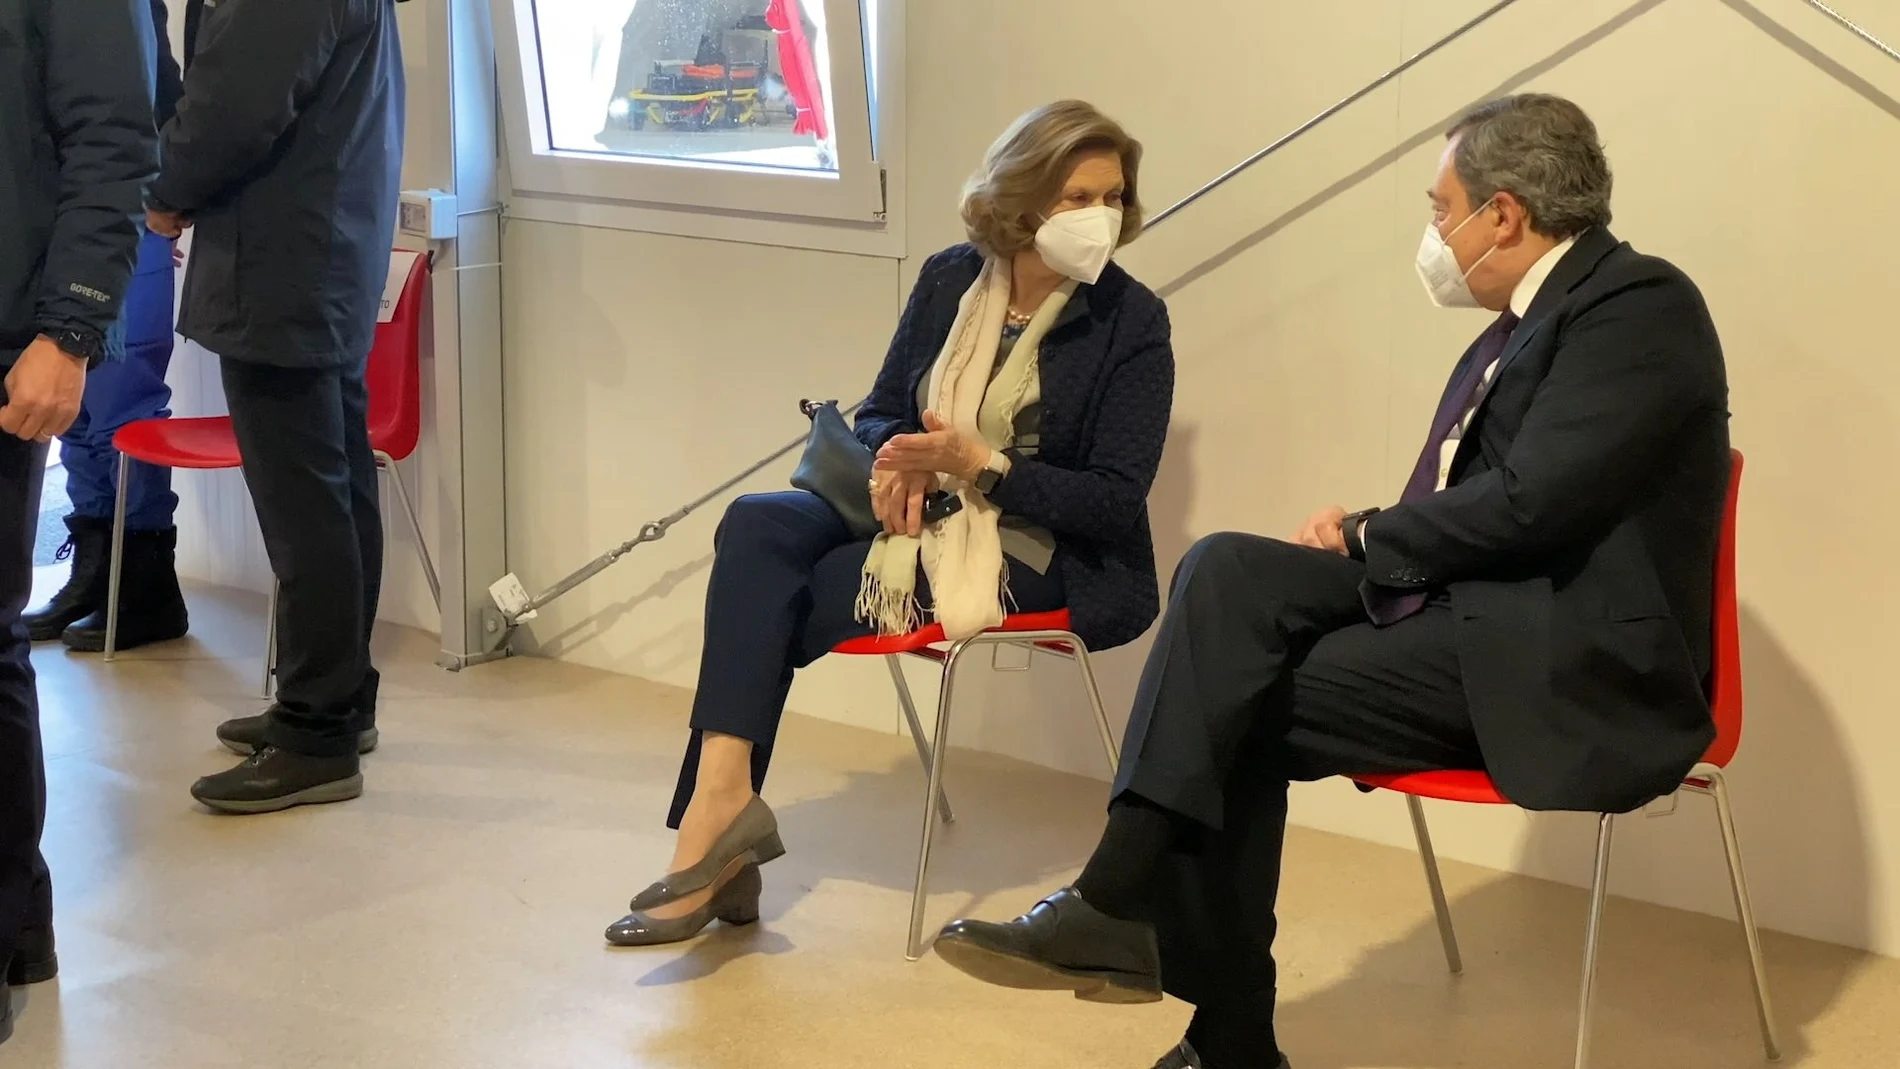 El primer ministro italiano Mario Draghi y su esposa Maria Serenella Cappello hablan en una sala de espera después de recibir su primera dosis de AstraZeneca